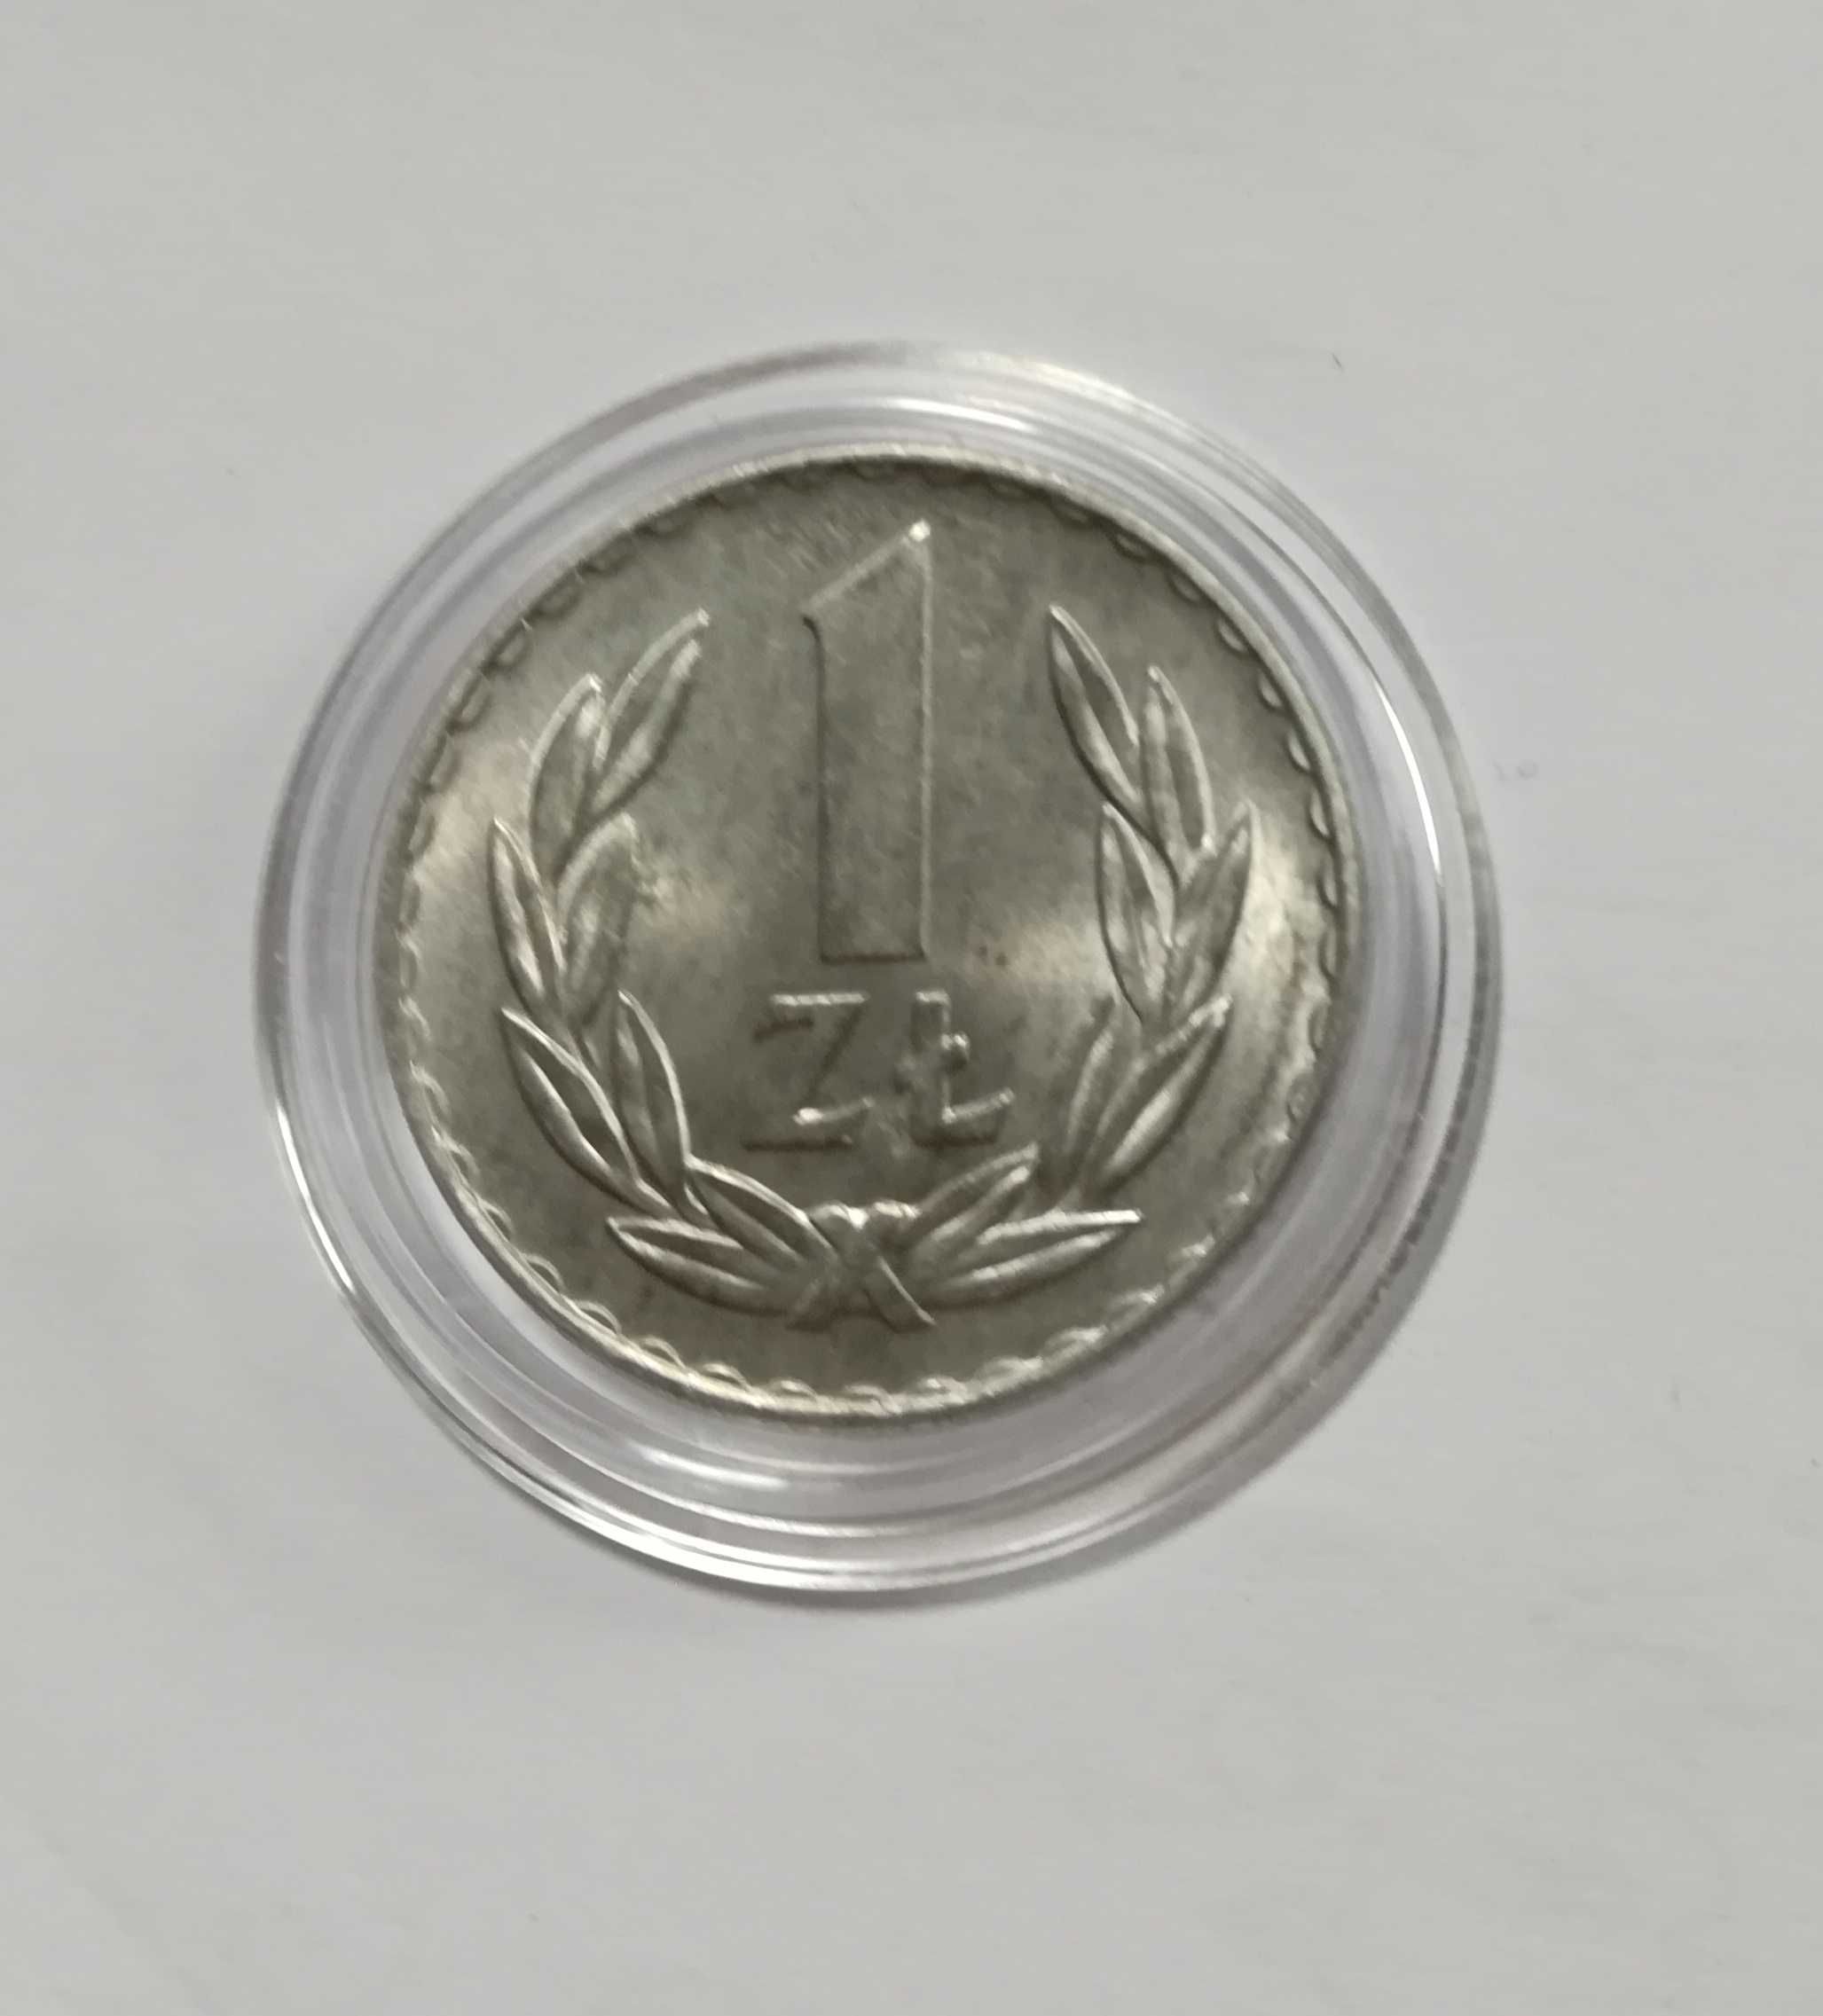 Moneta 1 zł z 1972 r, stan doskonały